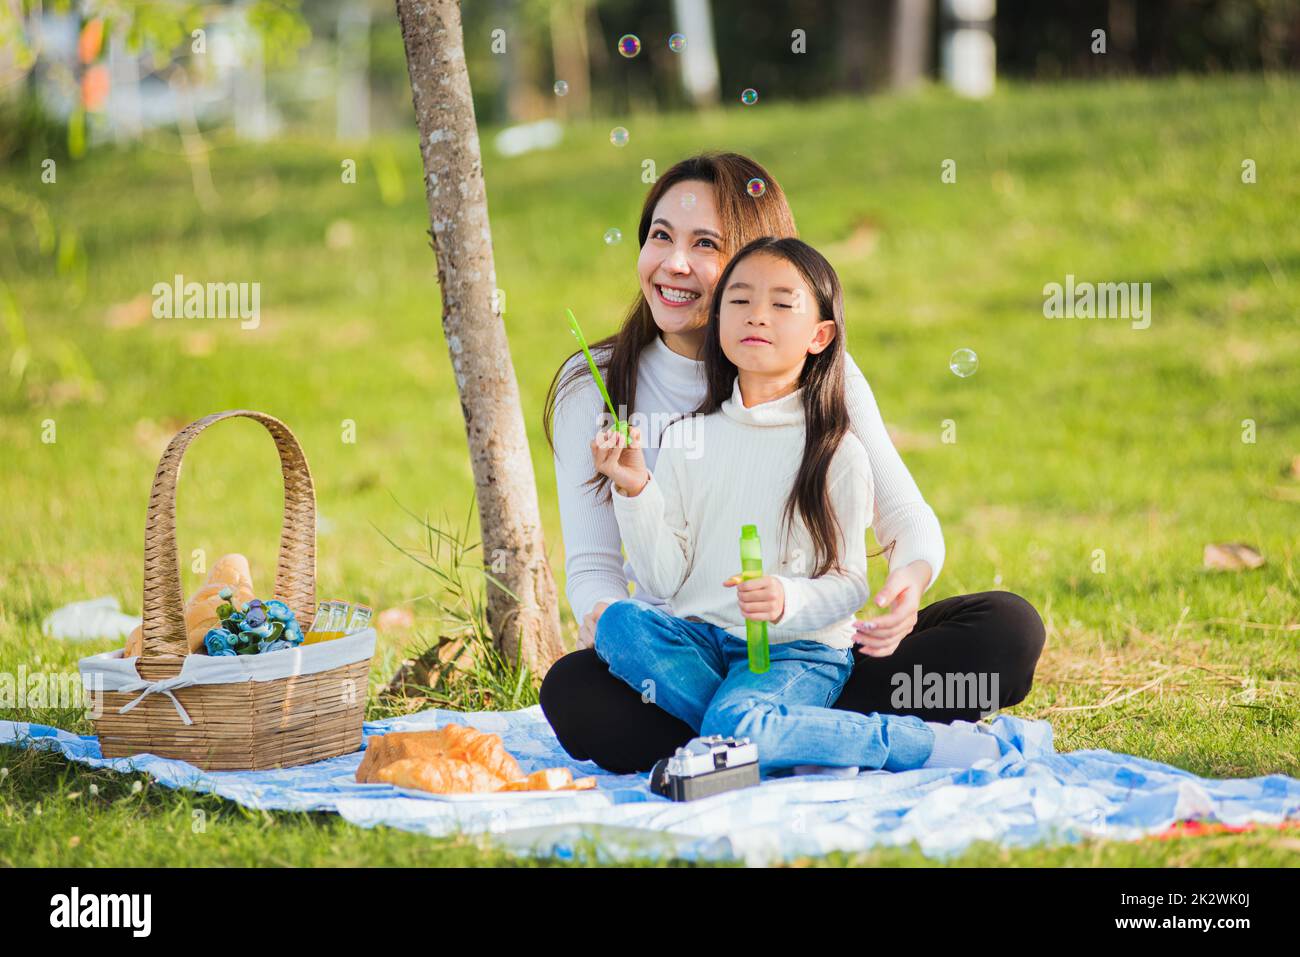 la mère et la fille ont du plaisir à souffler des bulles de savon pendant un pique-nique Banque D'Images